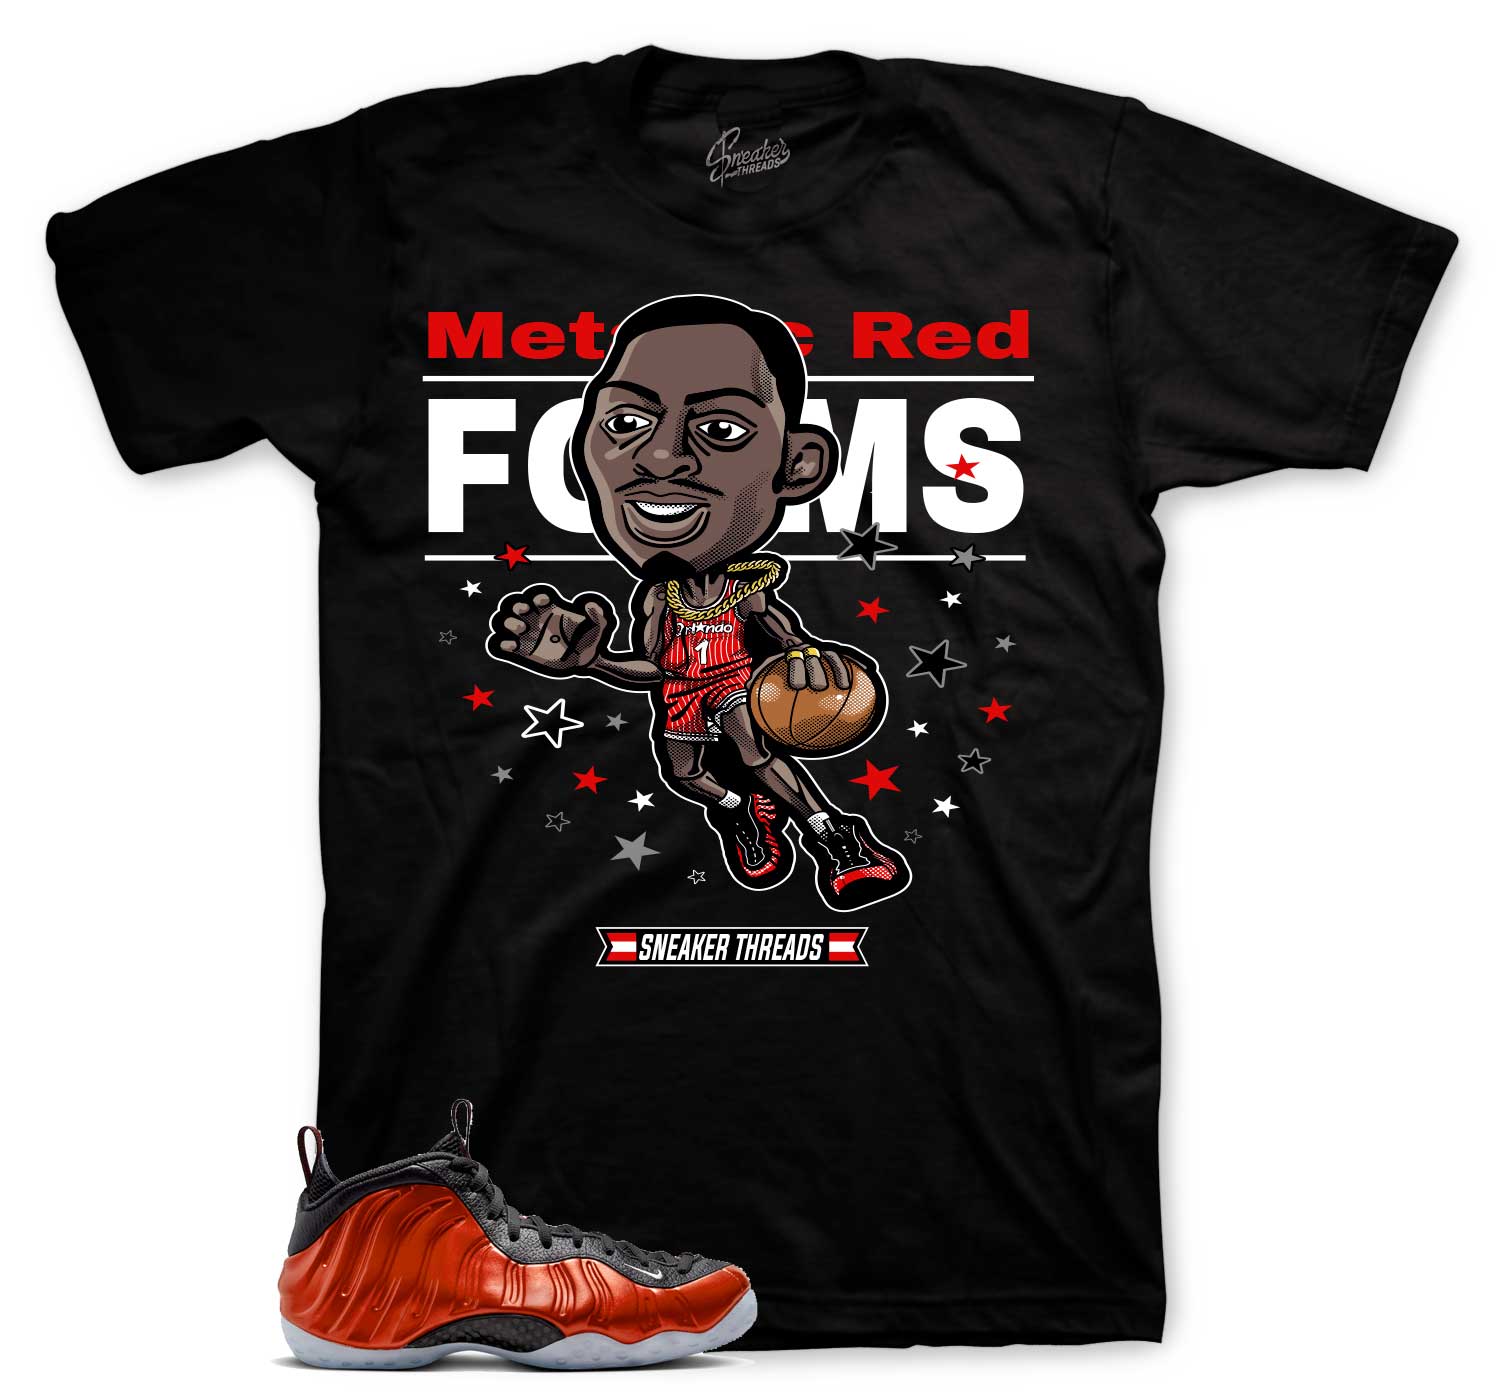 Foamposite Metallic Red Shirt - Toon - Black